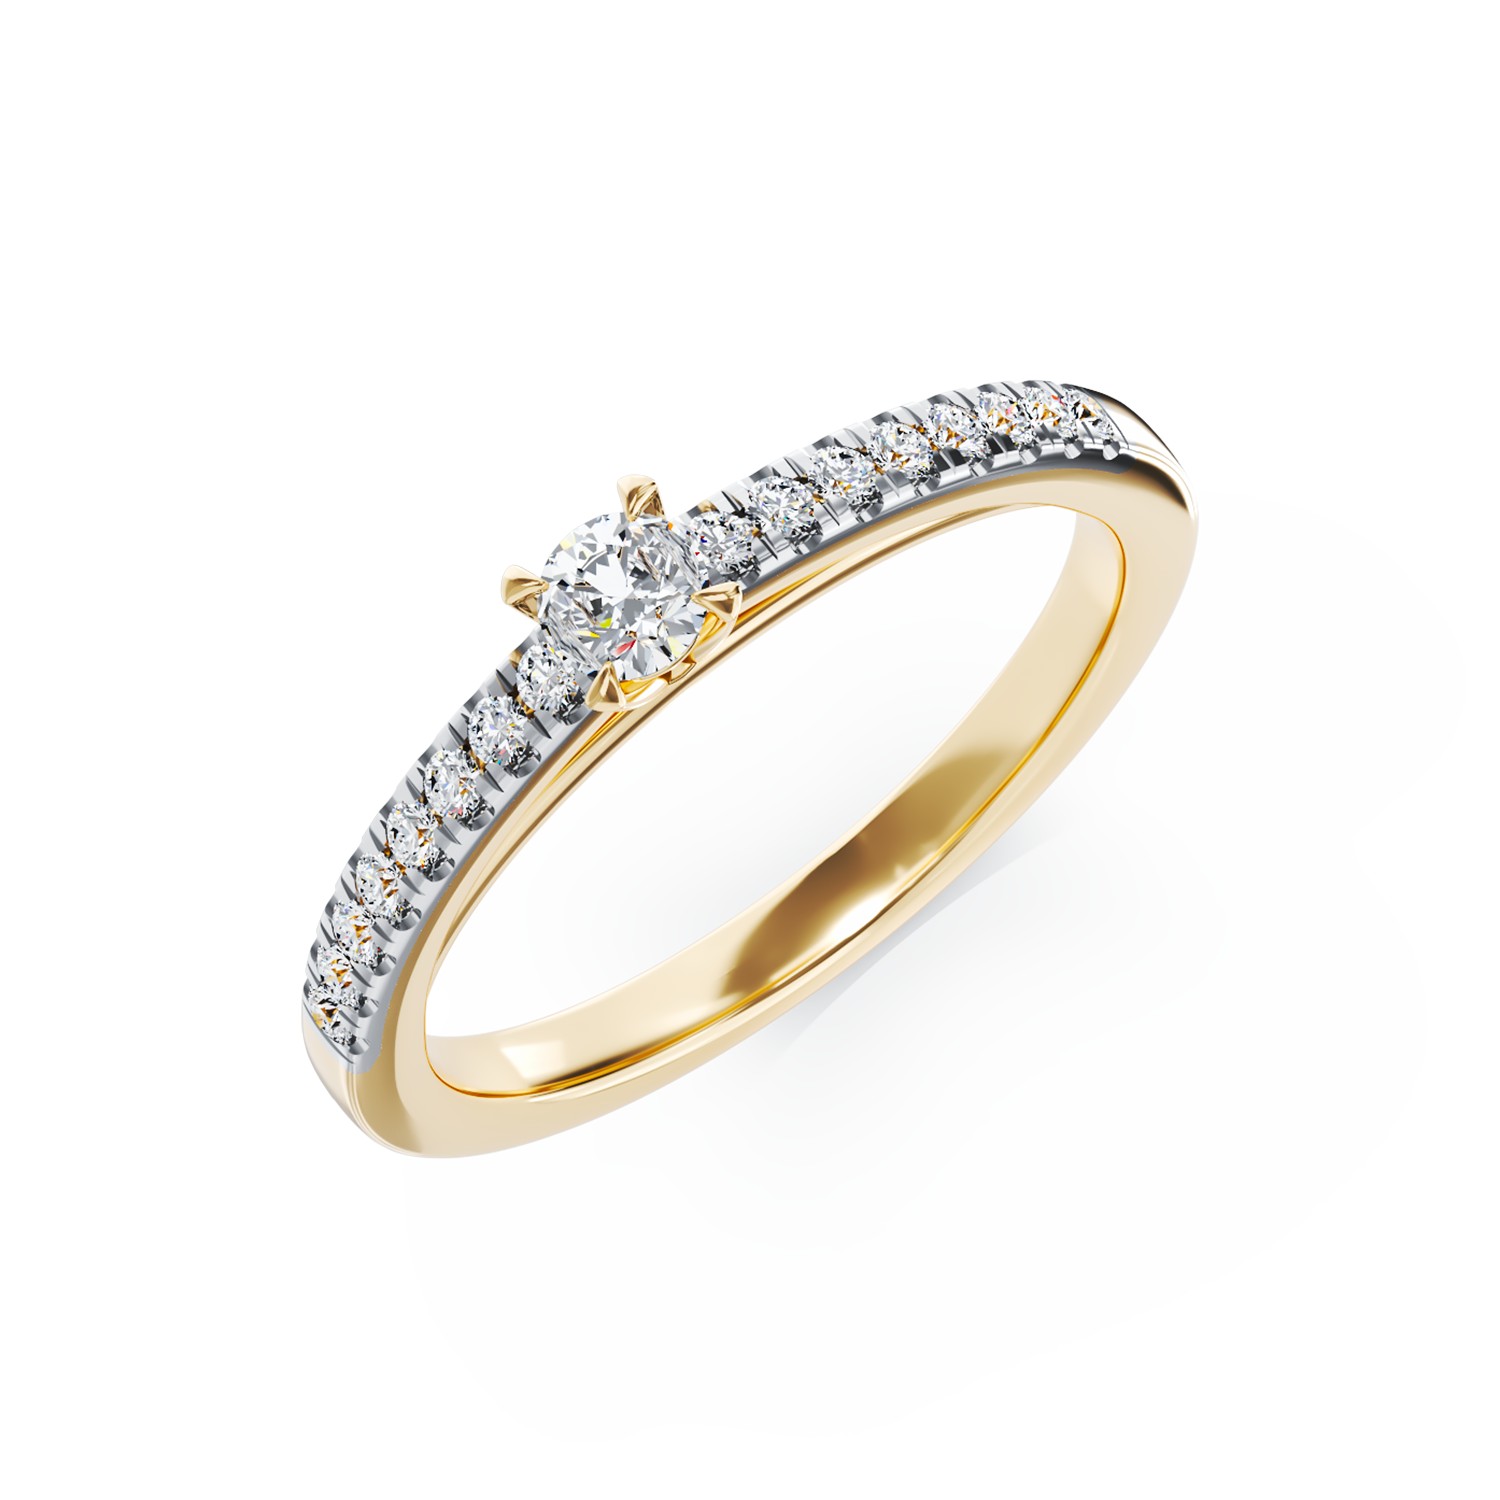 Eljegyzési gyűrű 18K-os sárga aranyból 0,15ct gyémánttal és 0,16ct gyémánttal. Gramm: 2,30